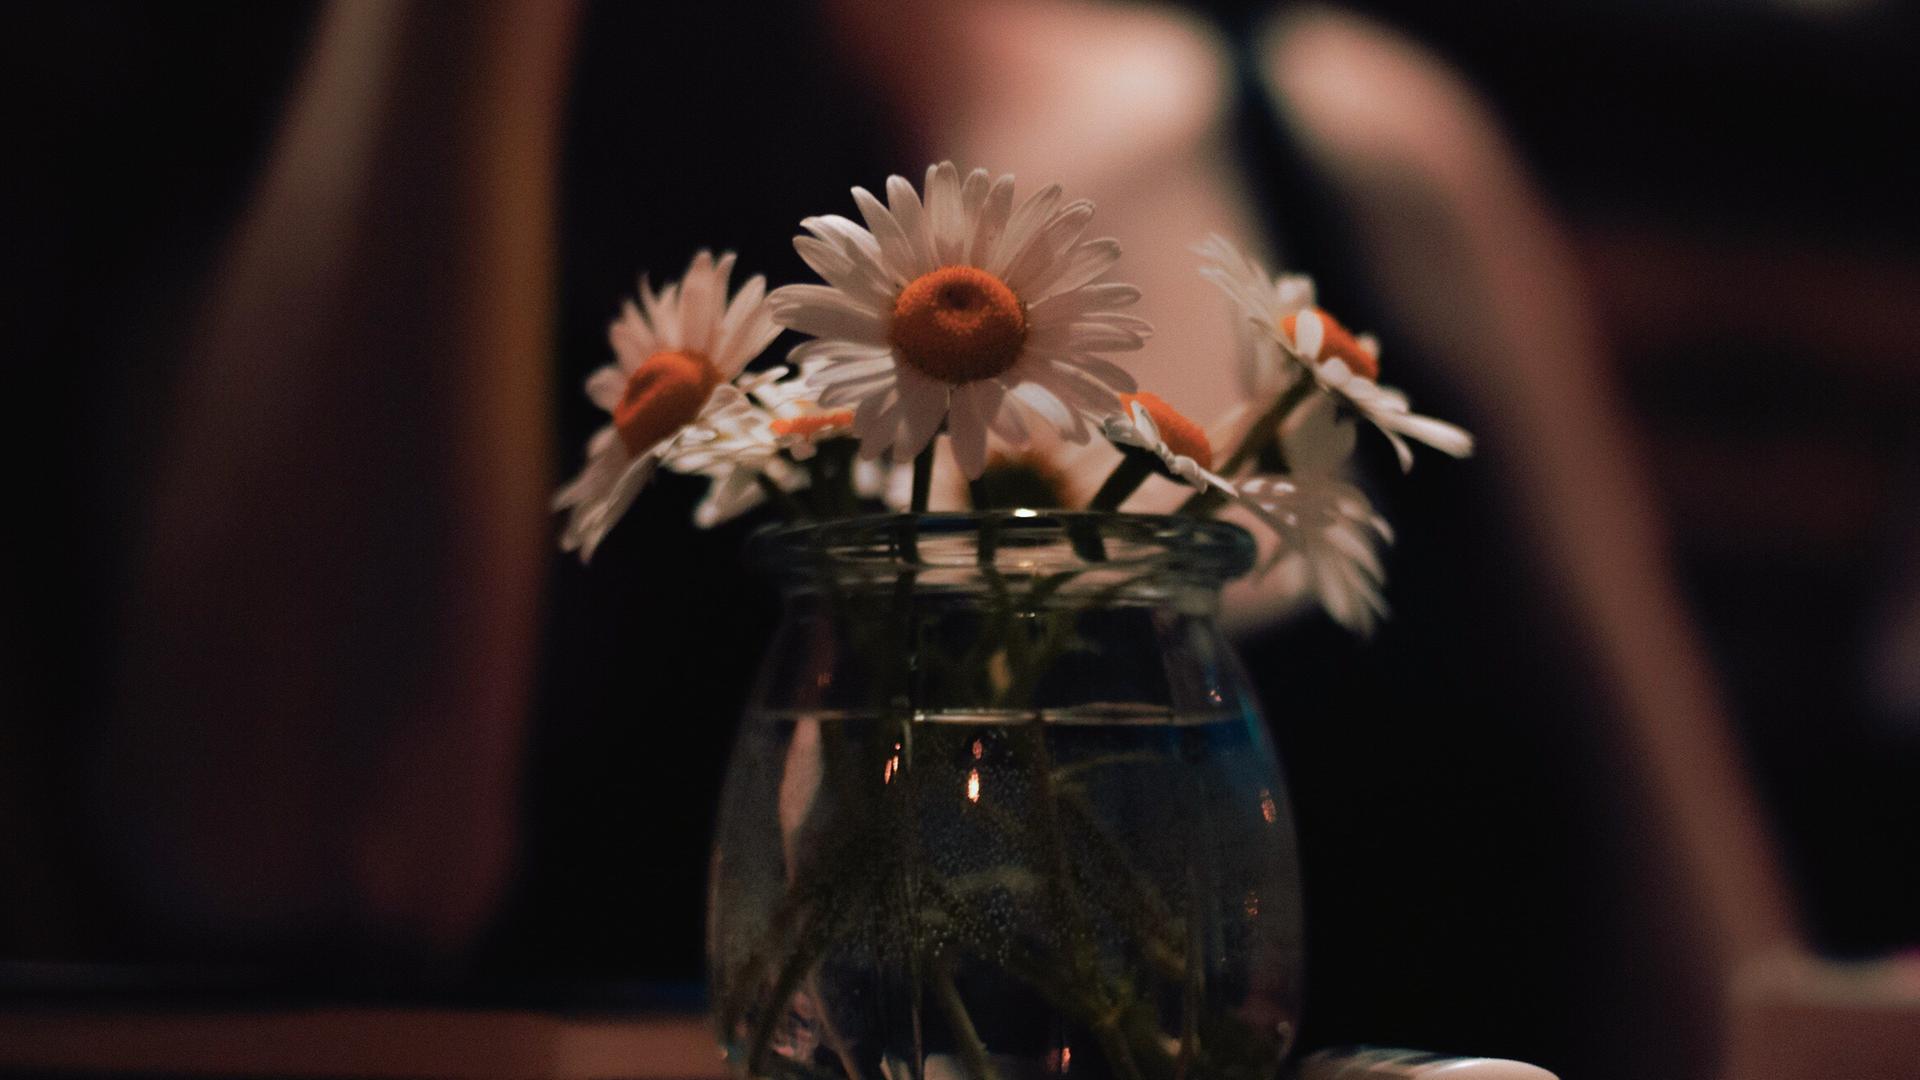 Nahaufnahme einer Vase mit Gänseblümchen (engl. Daisy, wie der Name der Protagonistin), die Stimmung im Bild ist eher düster, im Hintergrund ist unscharf eine Person zu erkennen.